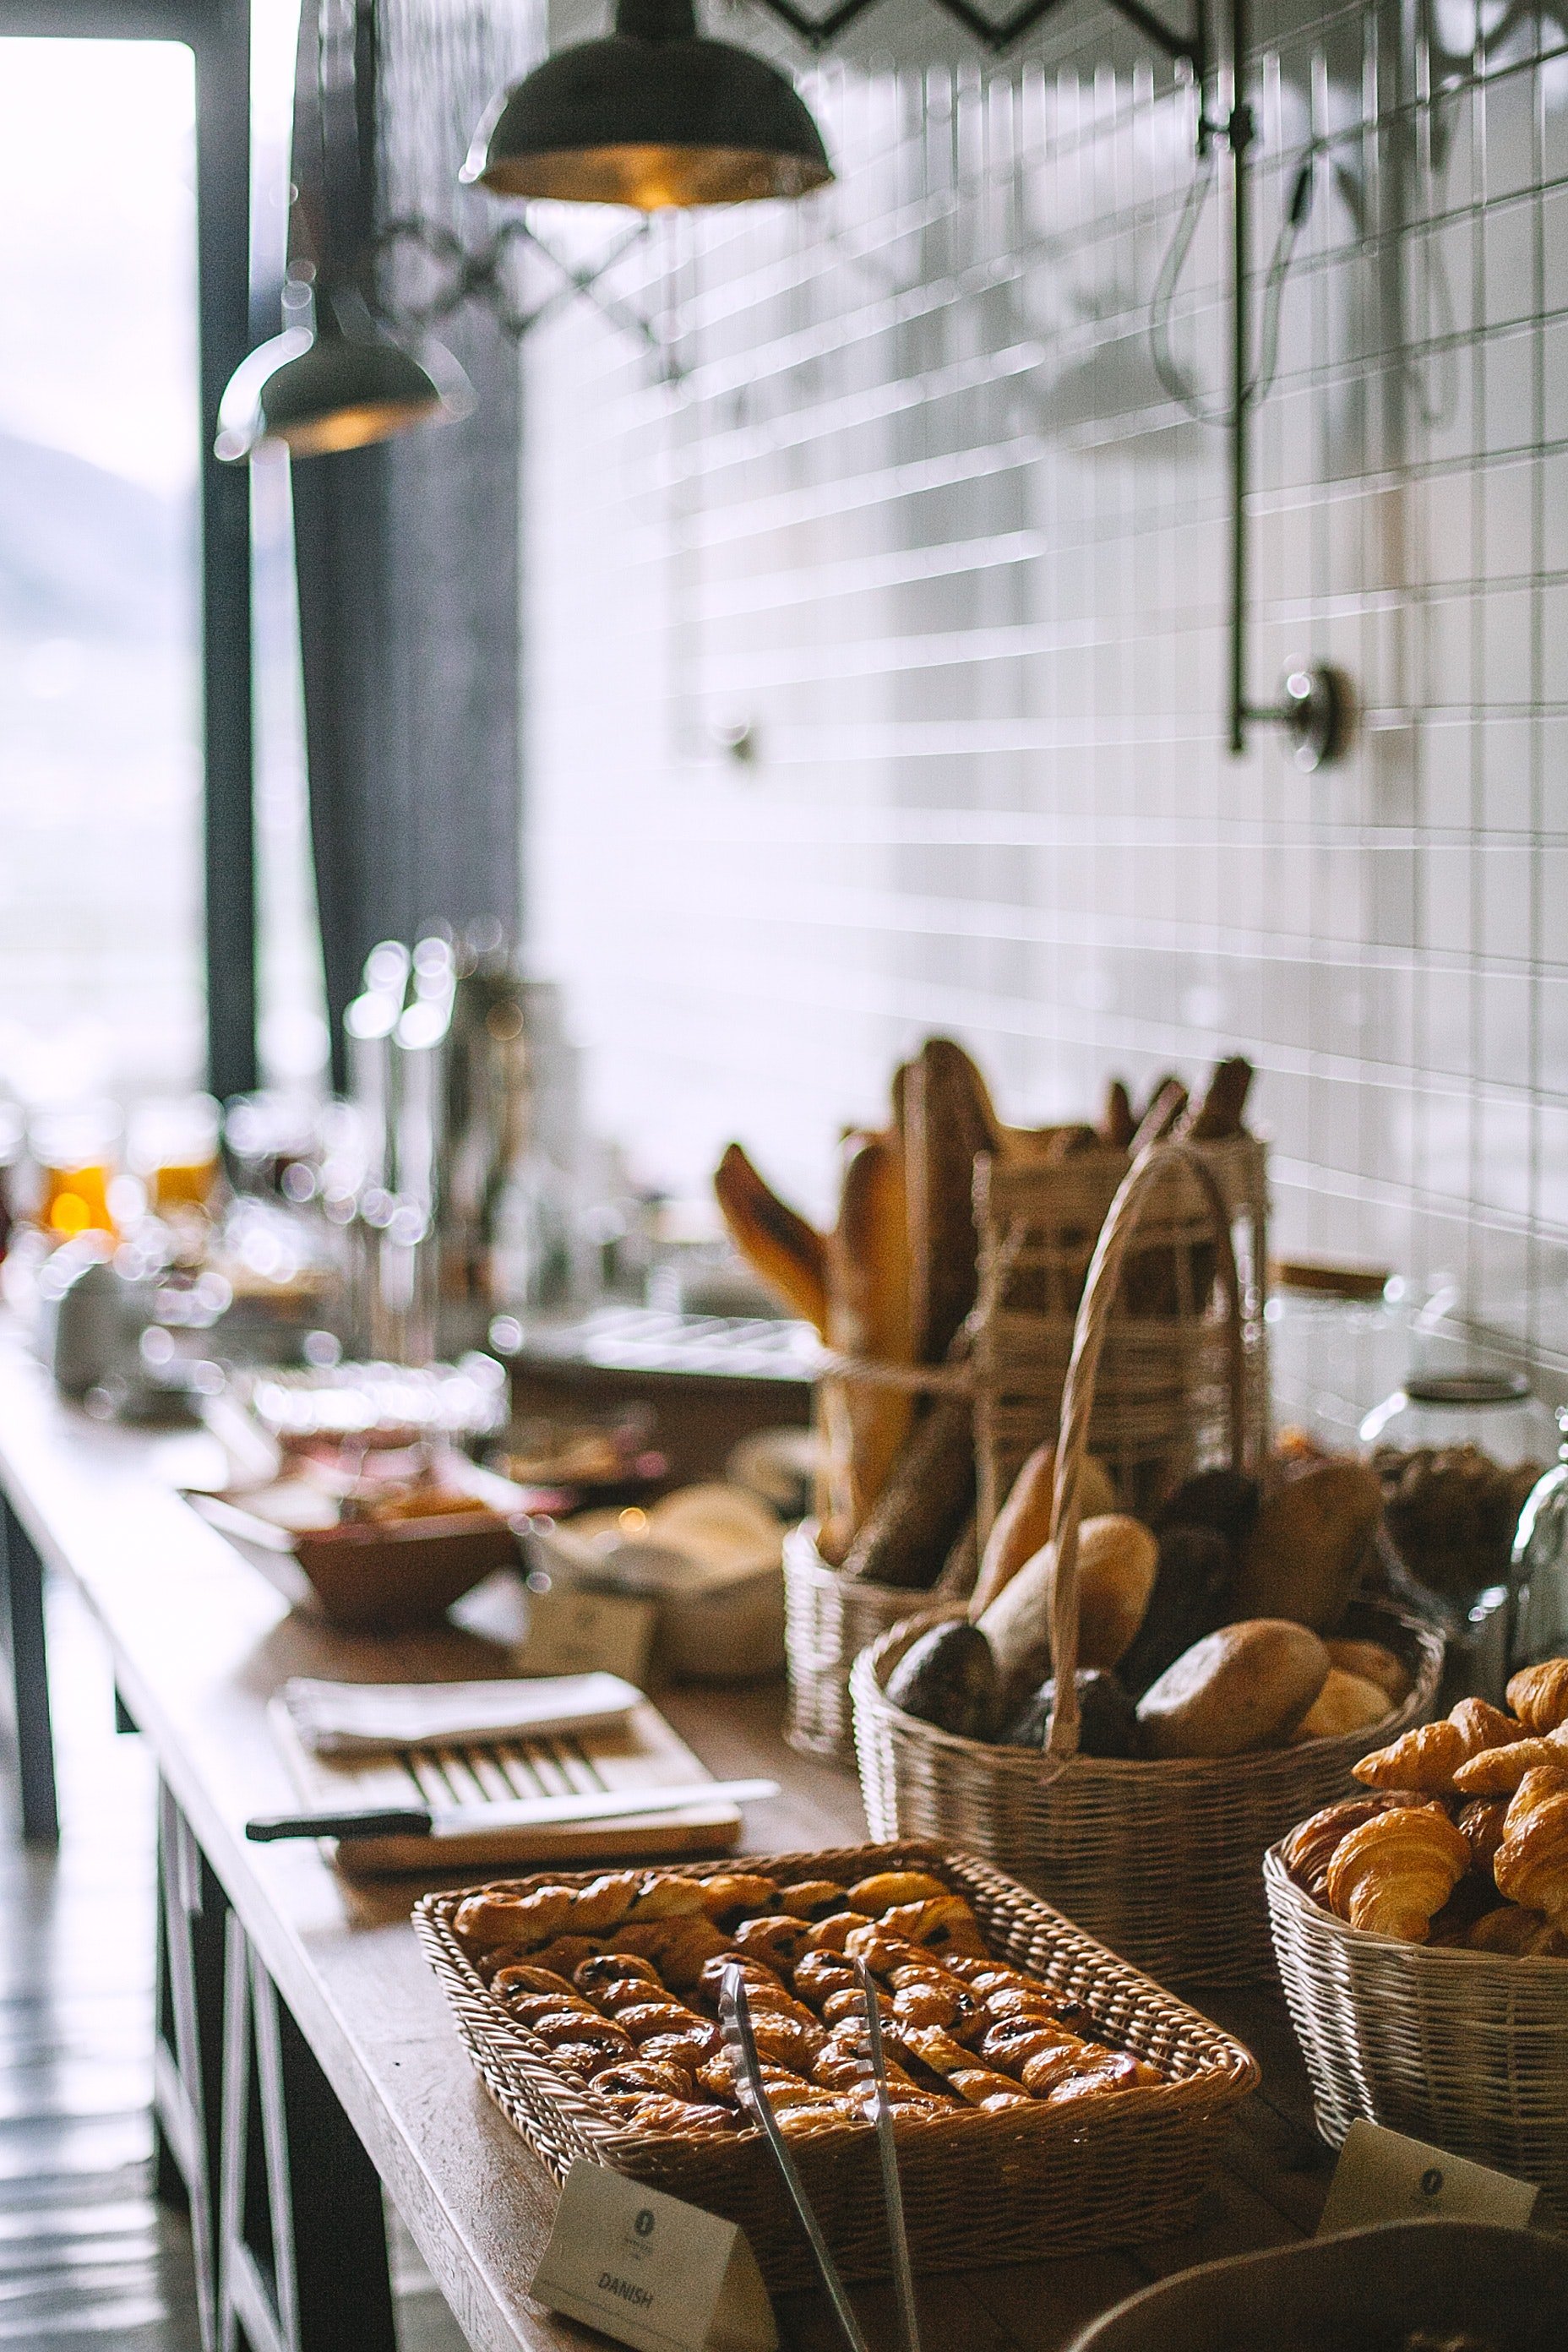 Panadería artesanal. | Foto: Pexels